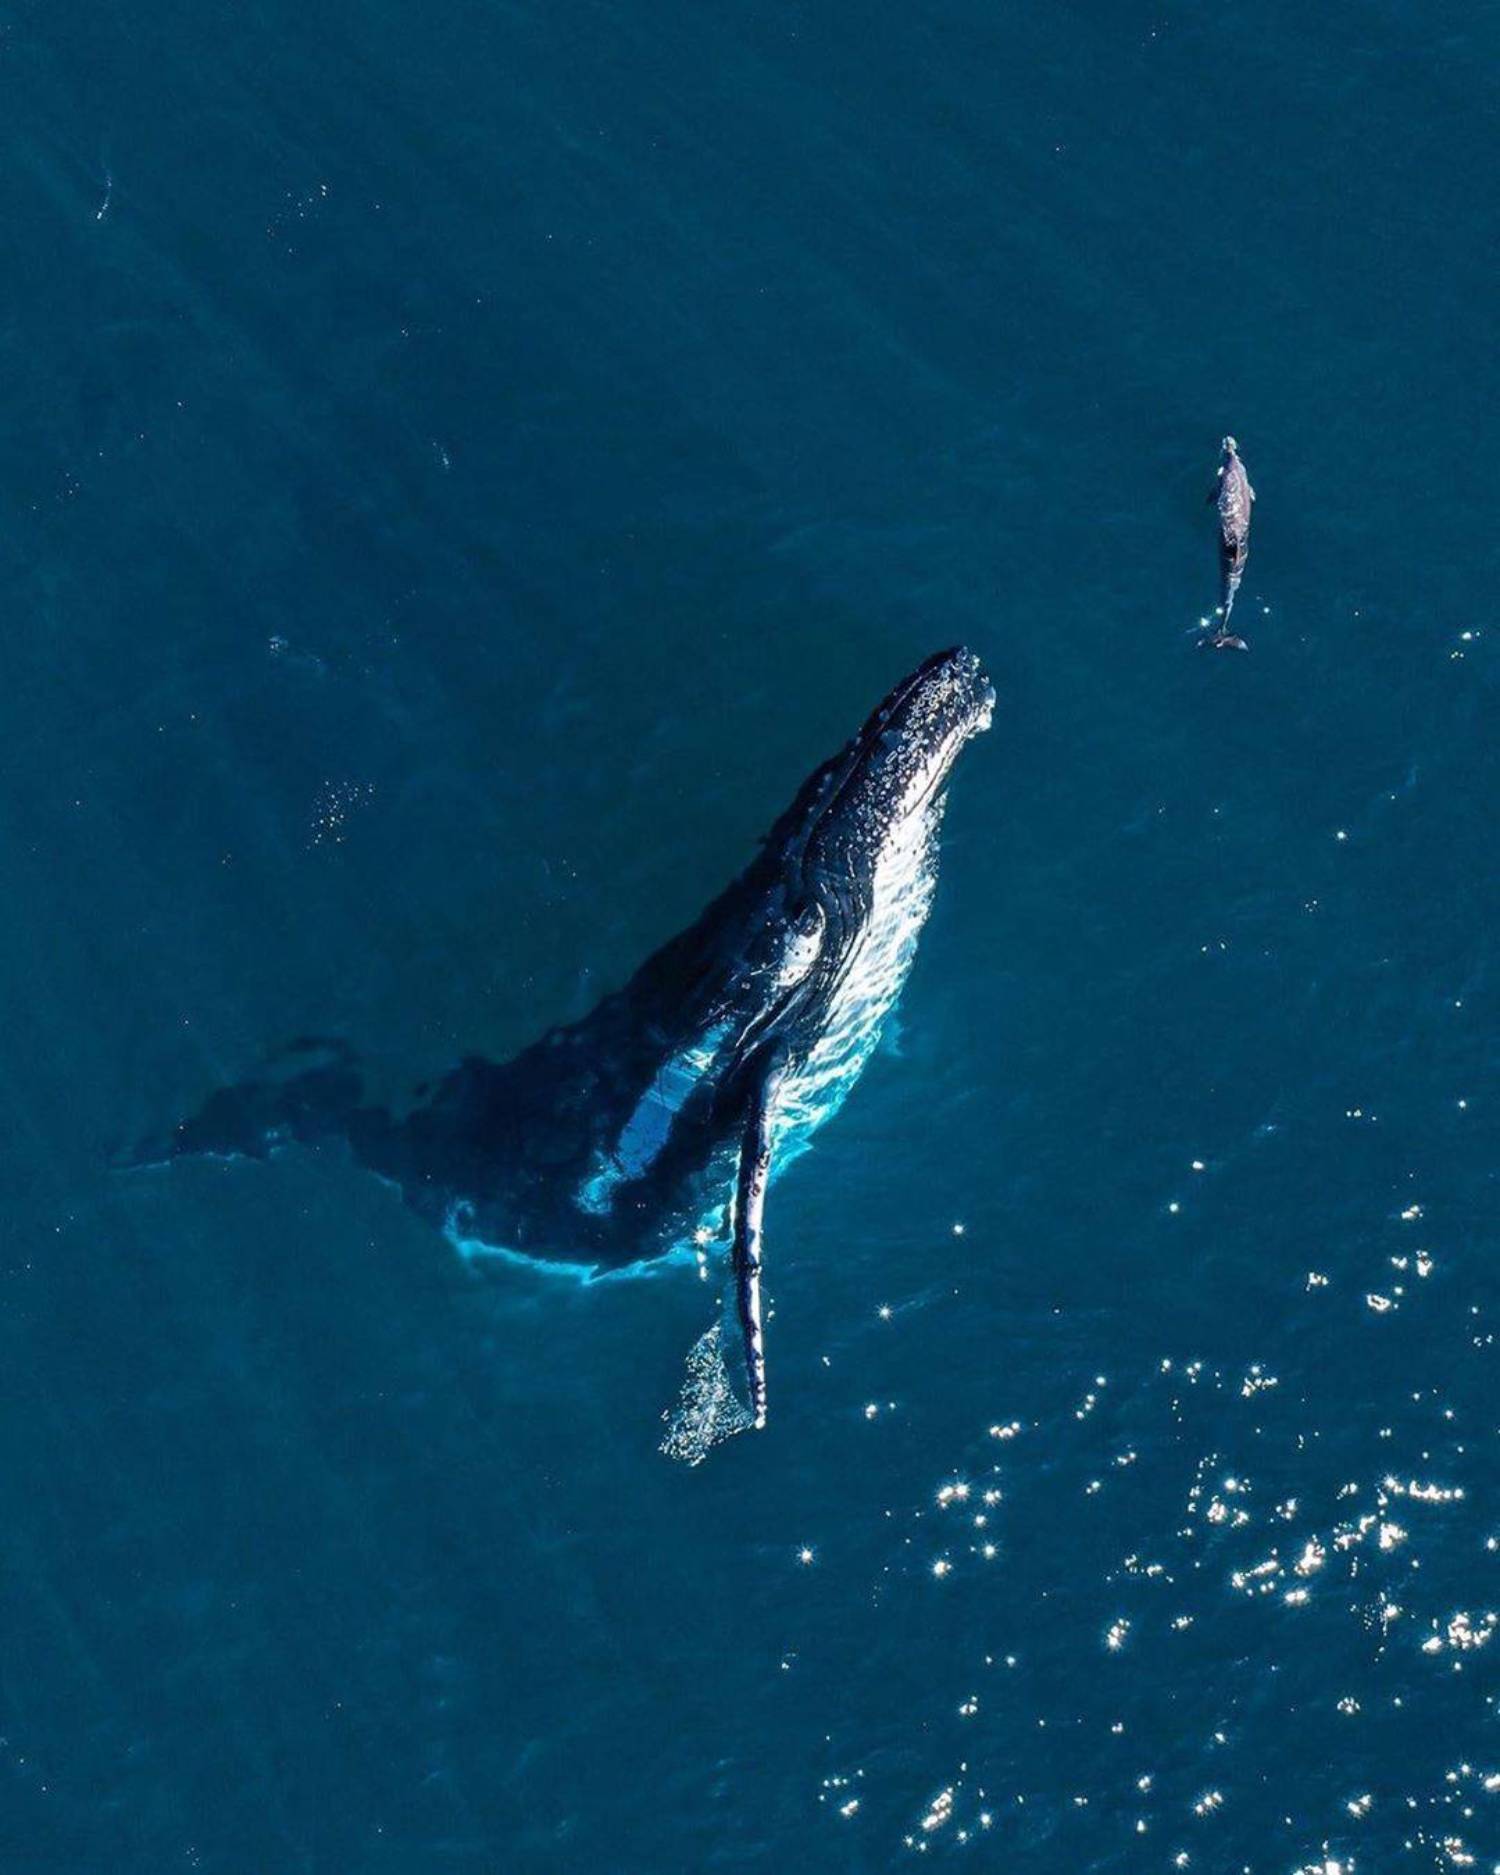 Baleine et baleineau